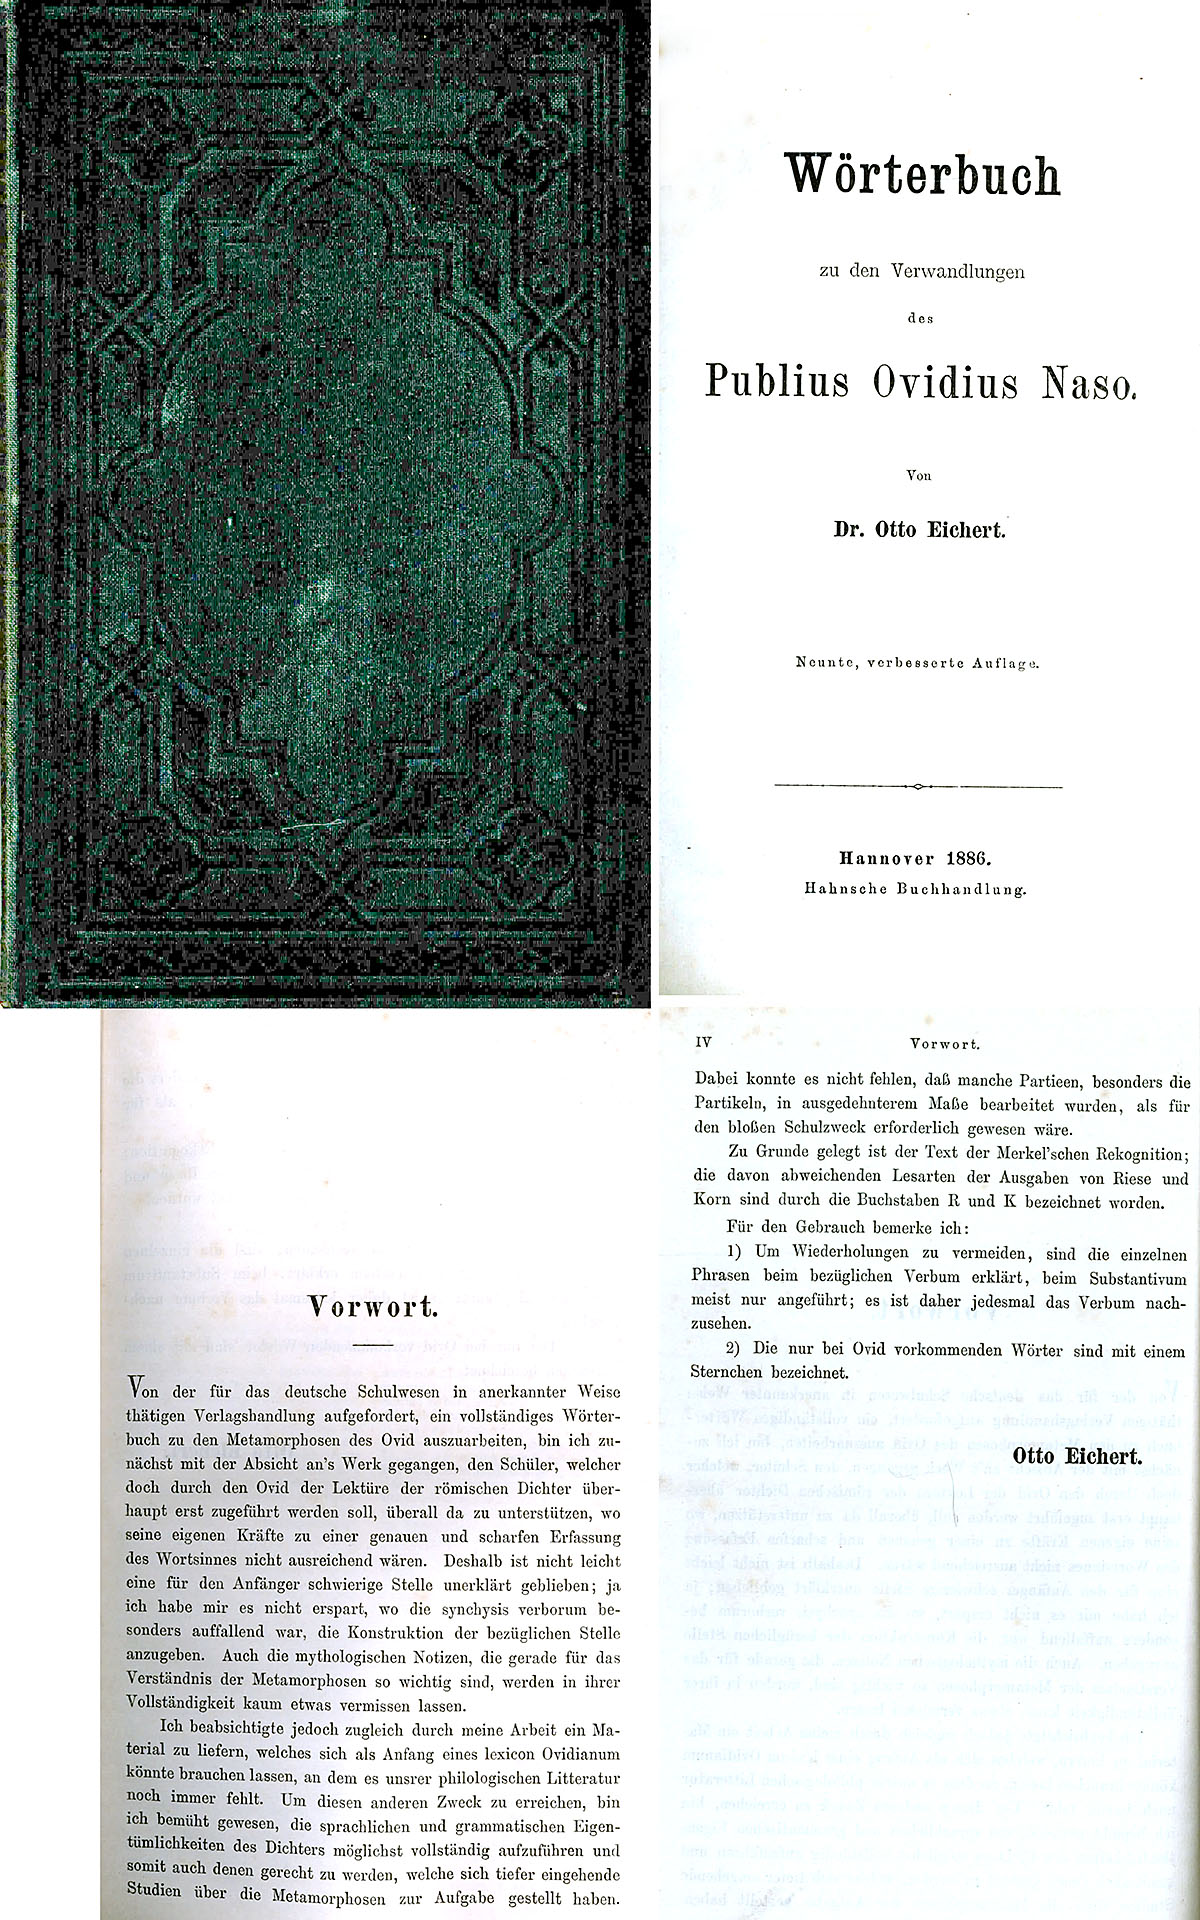 Wörterbuch zu den Verwandlungen des Publius Ovidius Naso - Eichert, Dr. Otto